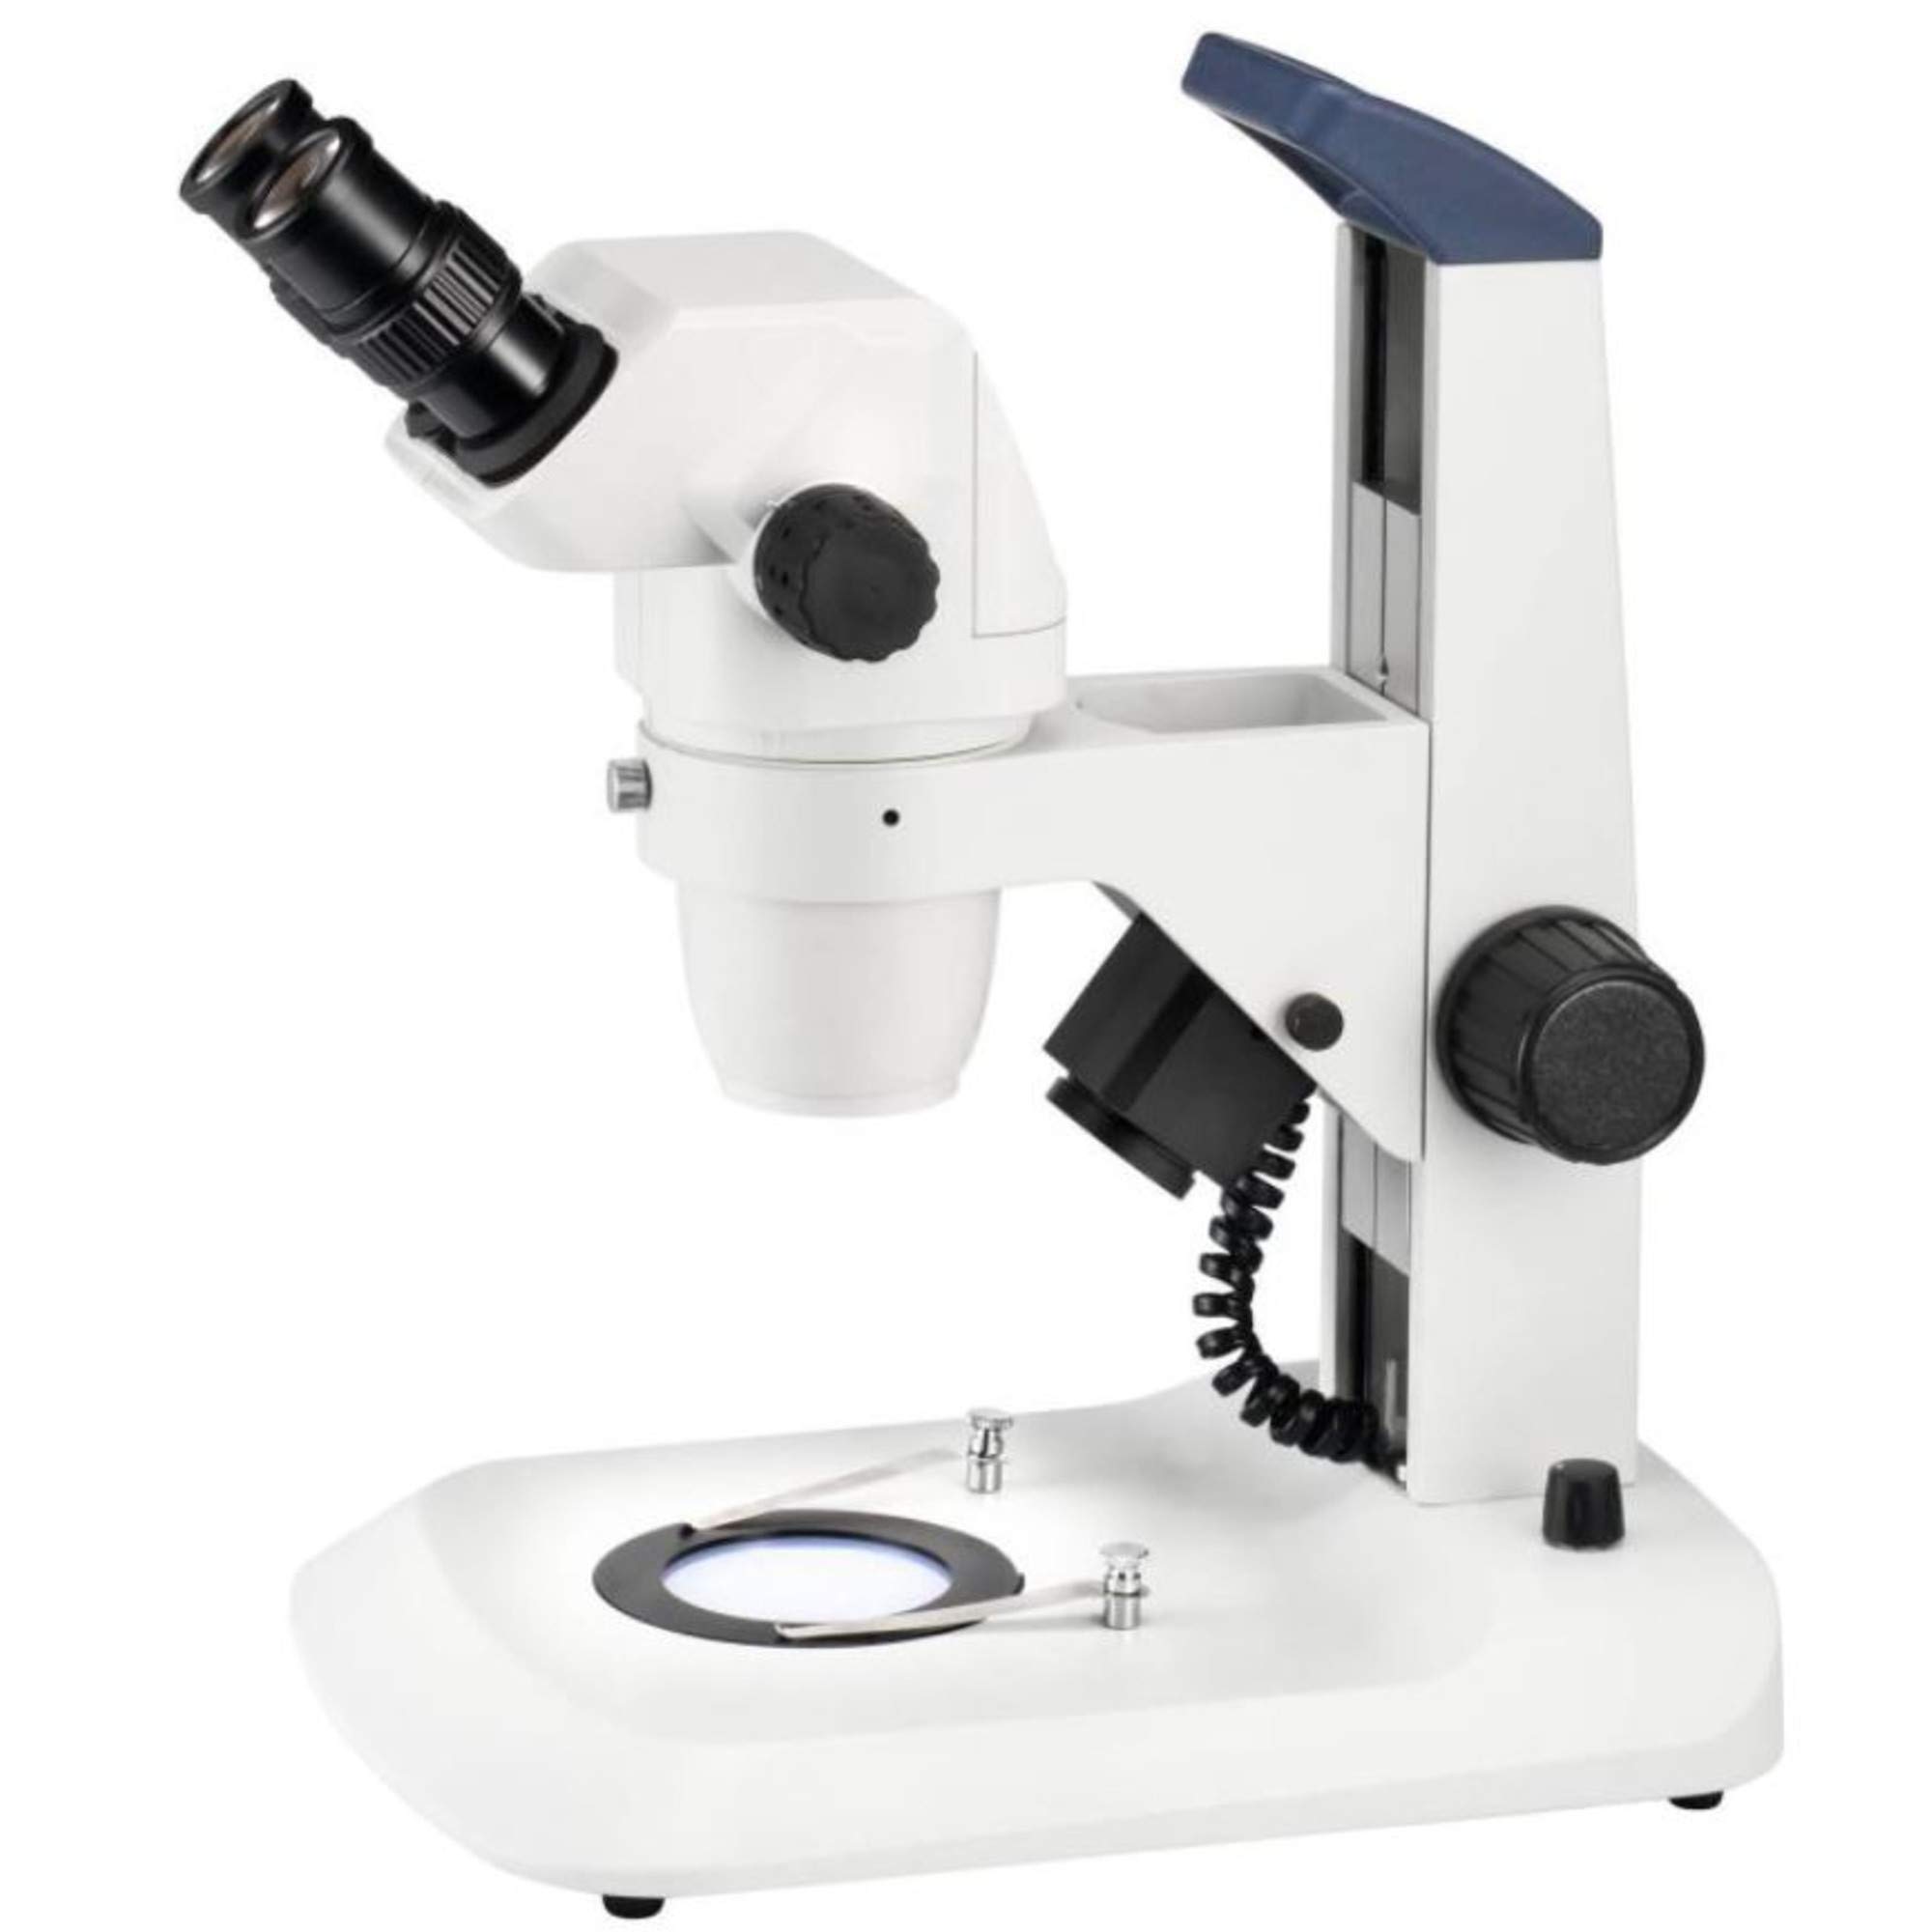 ESCHENBACH OPTIK Zoom Stereo Mikroskop; 6,7x-45x Auflicht-/Durchlicht Stereomikroskop mit Zoom; 45x Vergrößerung; mit LED Auf-/Durchlicht